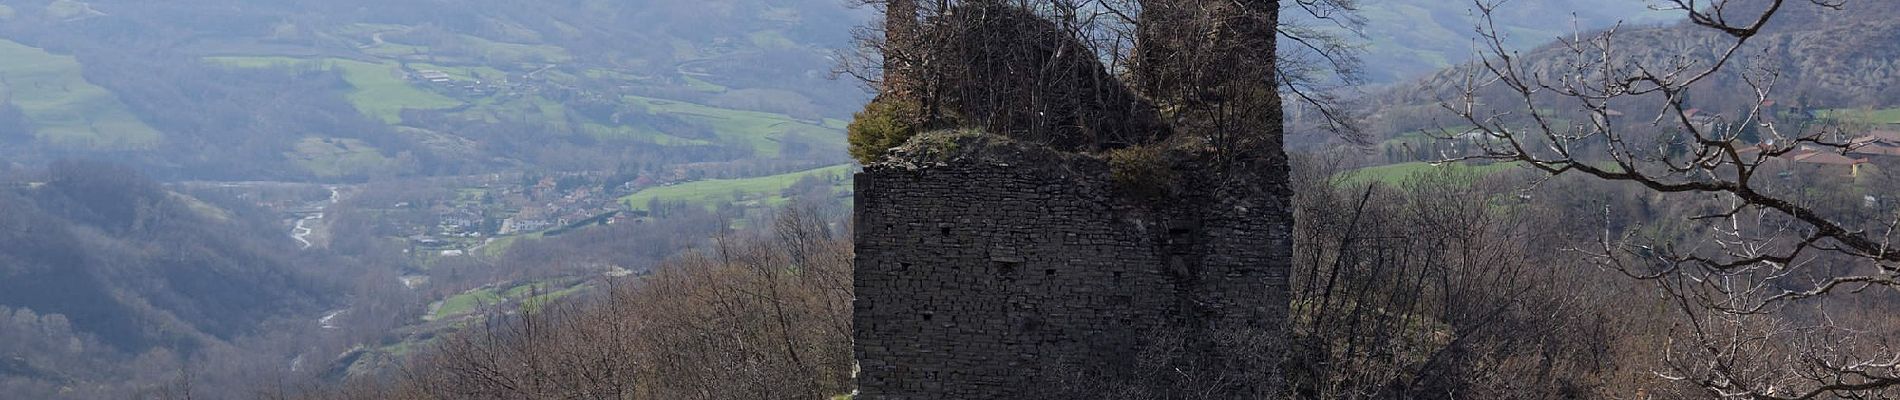 Tour Zu Fuß Bardi - Percorso 803 - Lavacchielli - Cerreto - Bre' - Pieve di Gravago - Brugnola - Monte Disperata - Photo